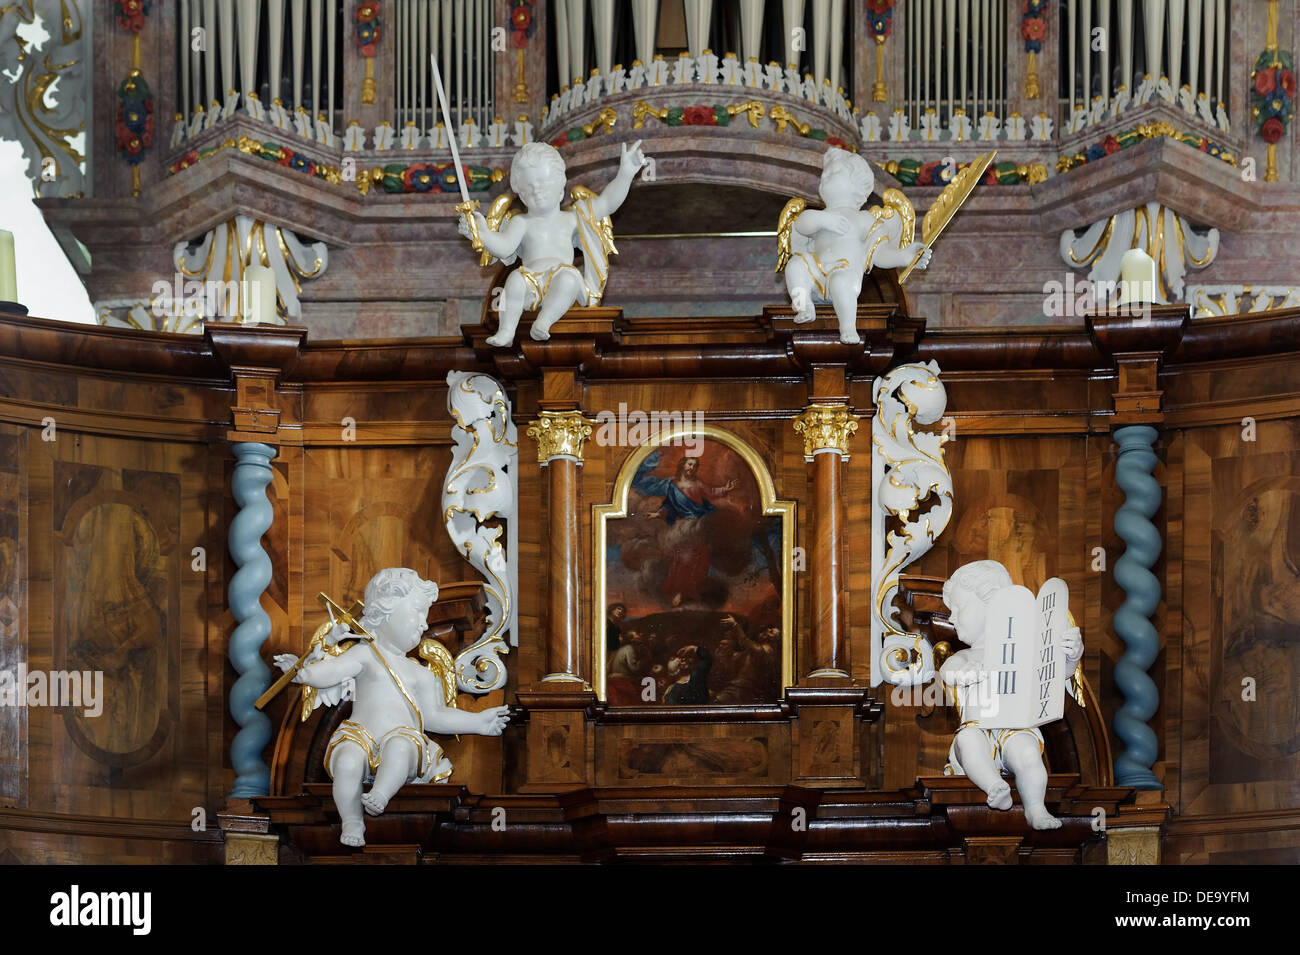 Dauphin-Orgel in der evangelischen Kirche von Kleinheubach am Main, Bayern, Deutschland Stockfoto